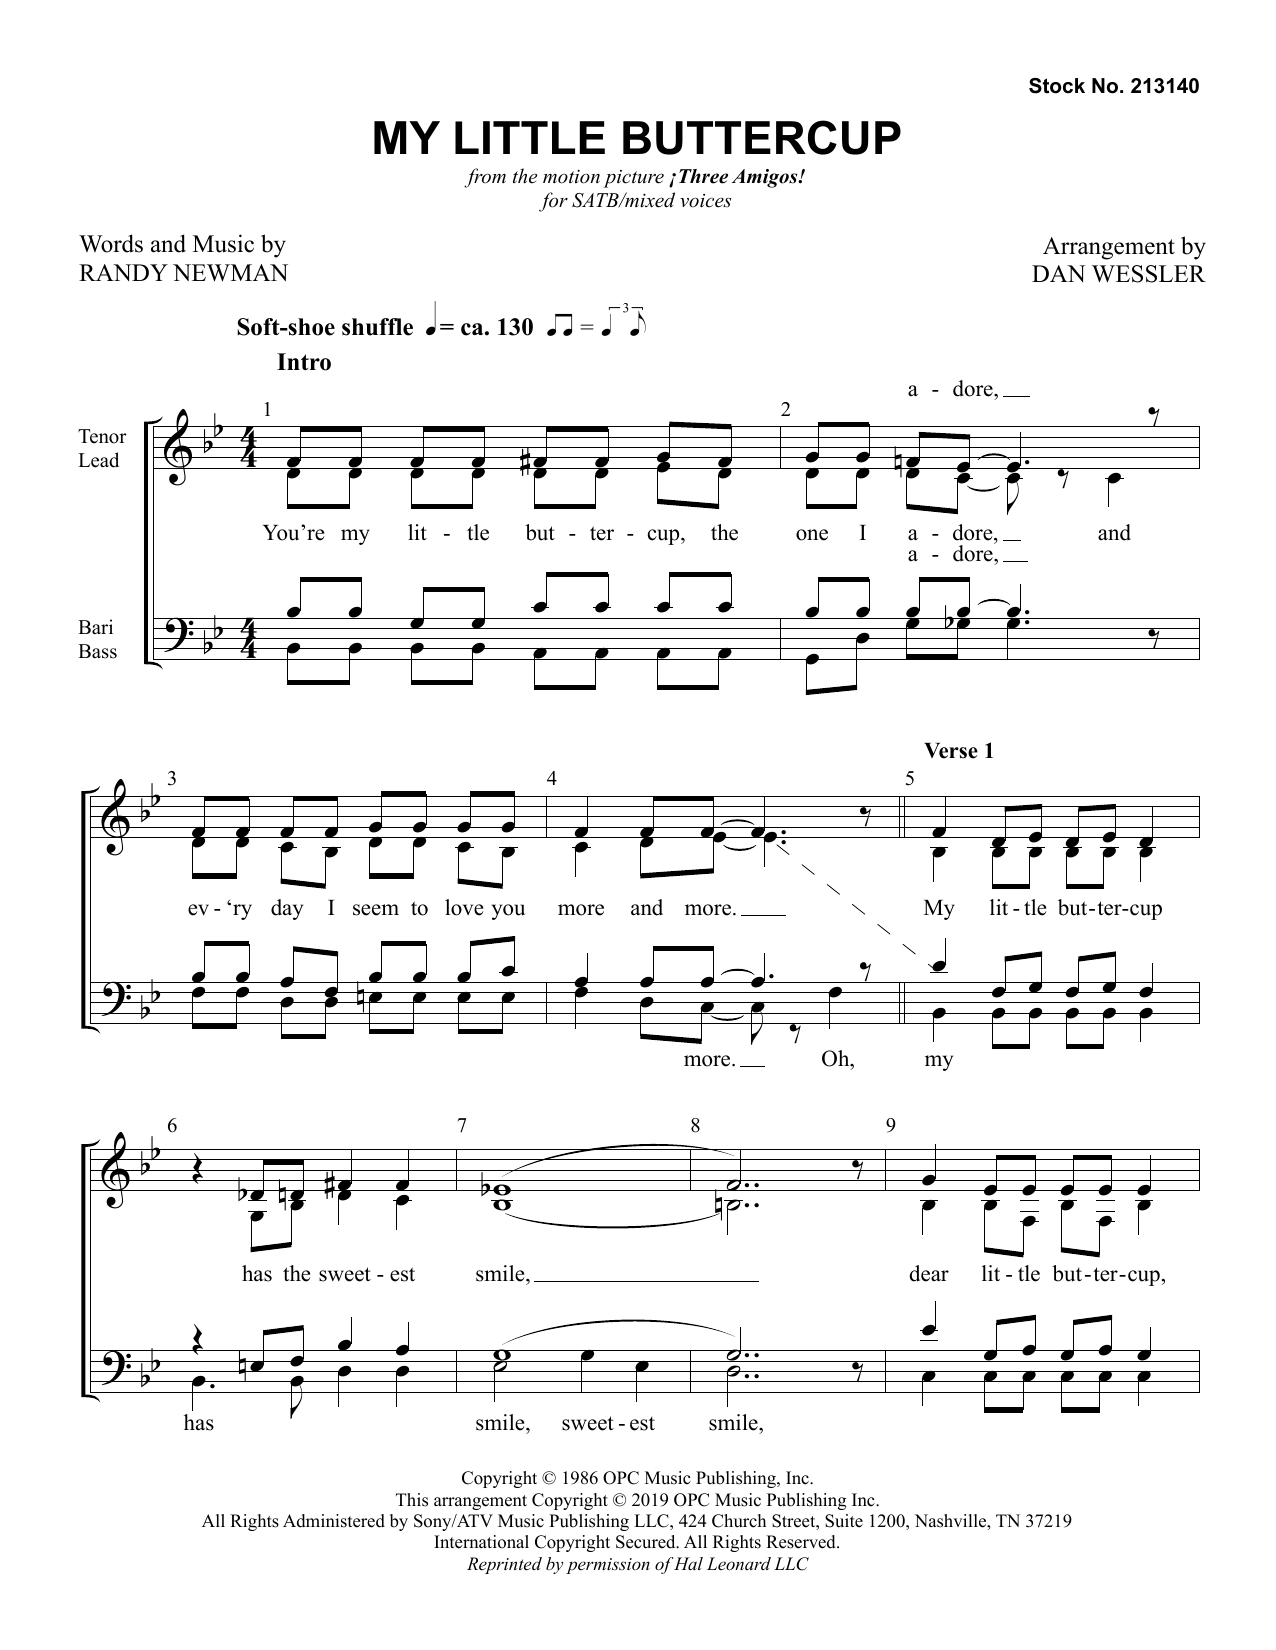 Randy Newman My Little Buttercup (arr. Dan Wessler) Sheet Music Notes & Chords for TTBB Choir - Download or Print PDF